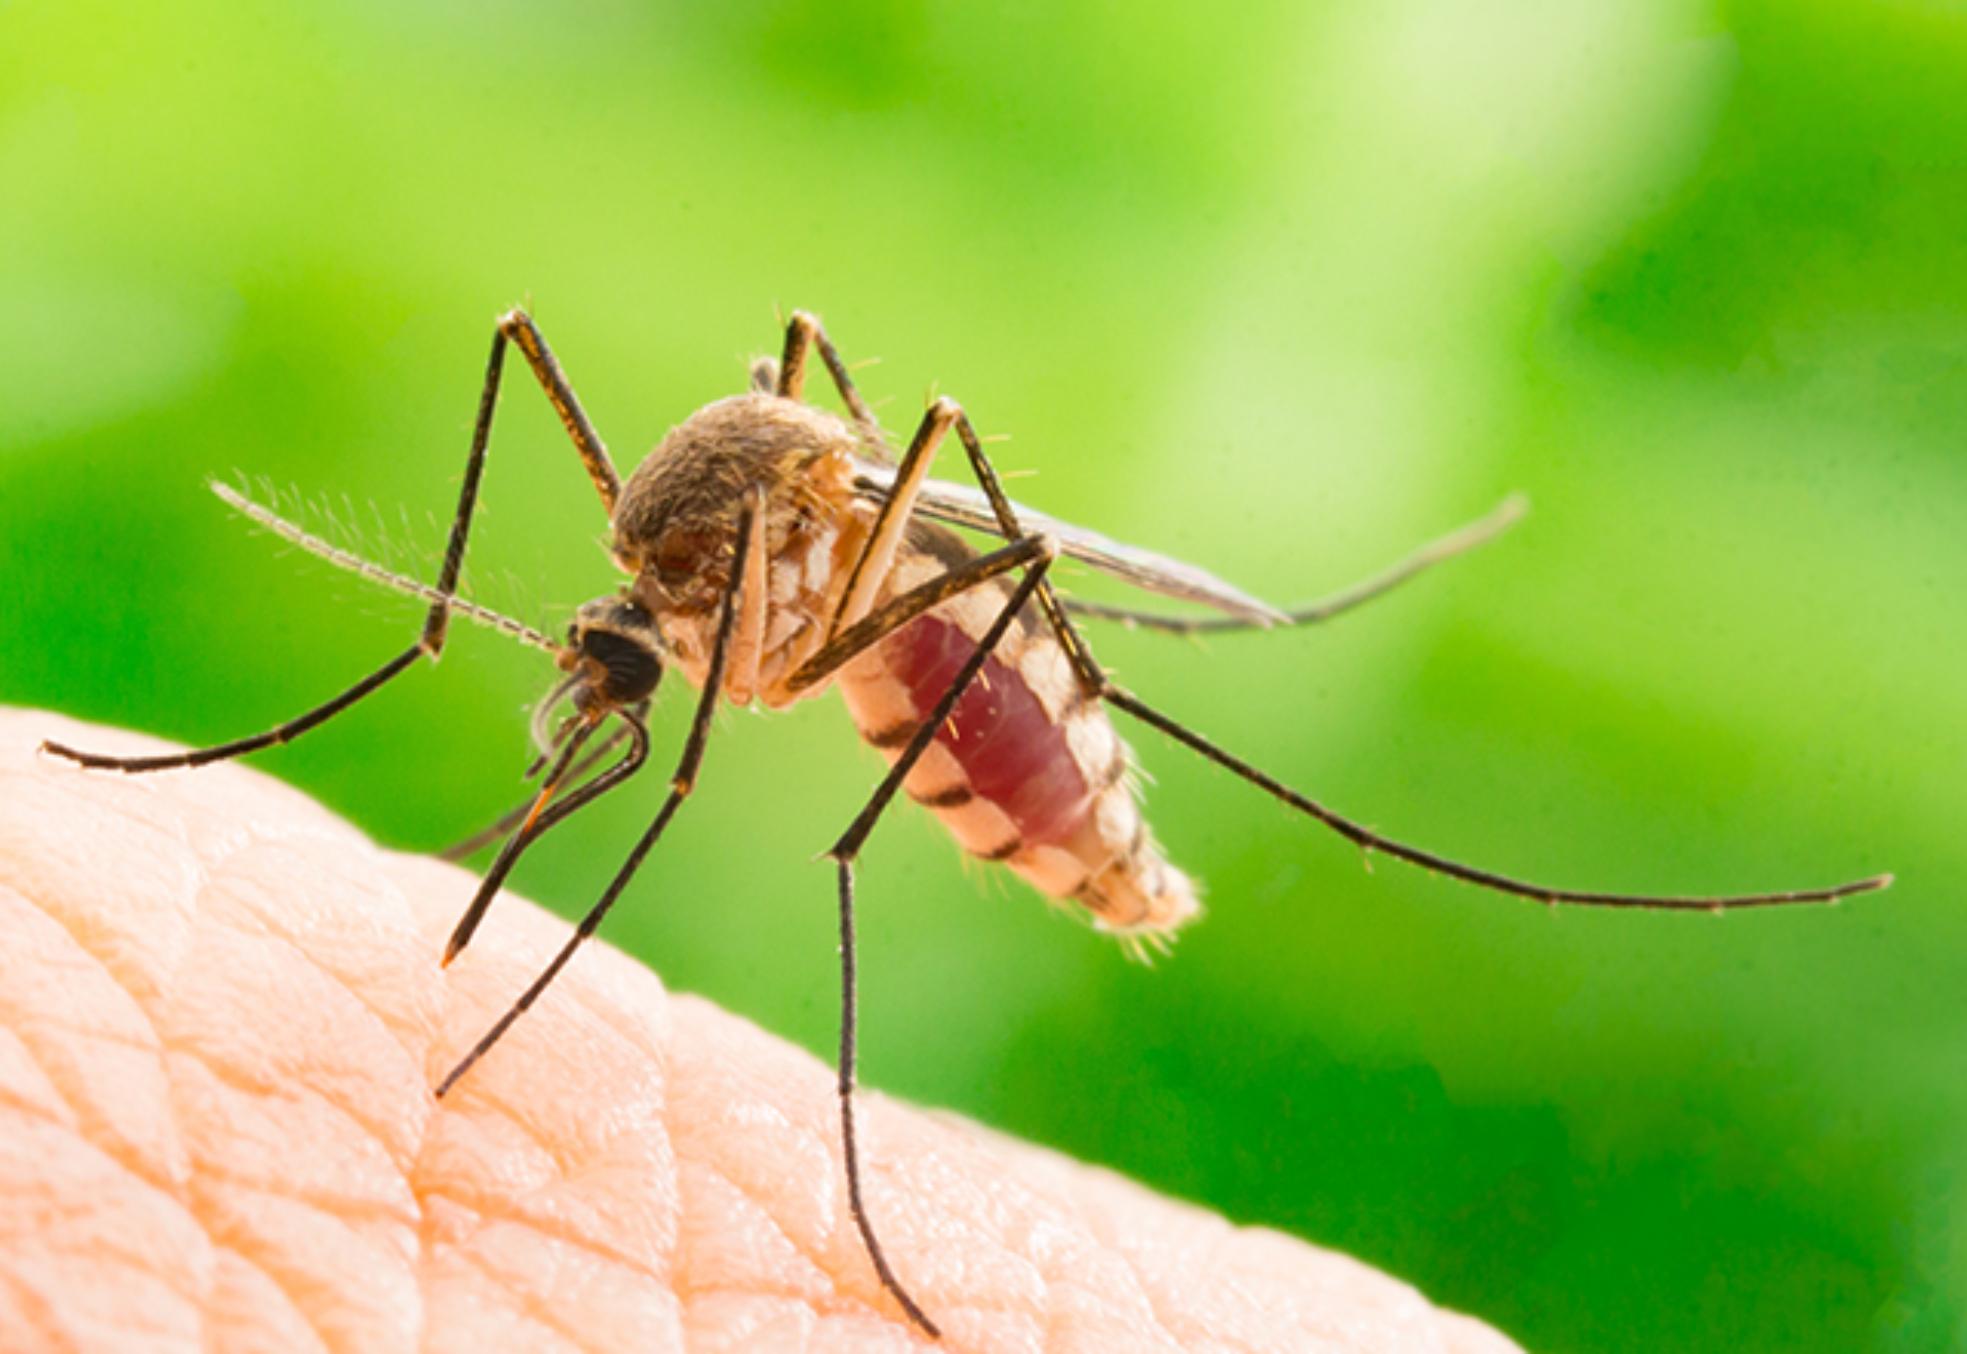 Χαμός από κουνούπια το φετινό καλοκαίρι: Πως θα προστατέψετε και θα αντιμετώπισετε τα τσιμπήματα στα παιδιά